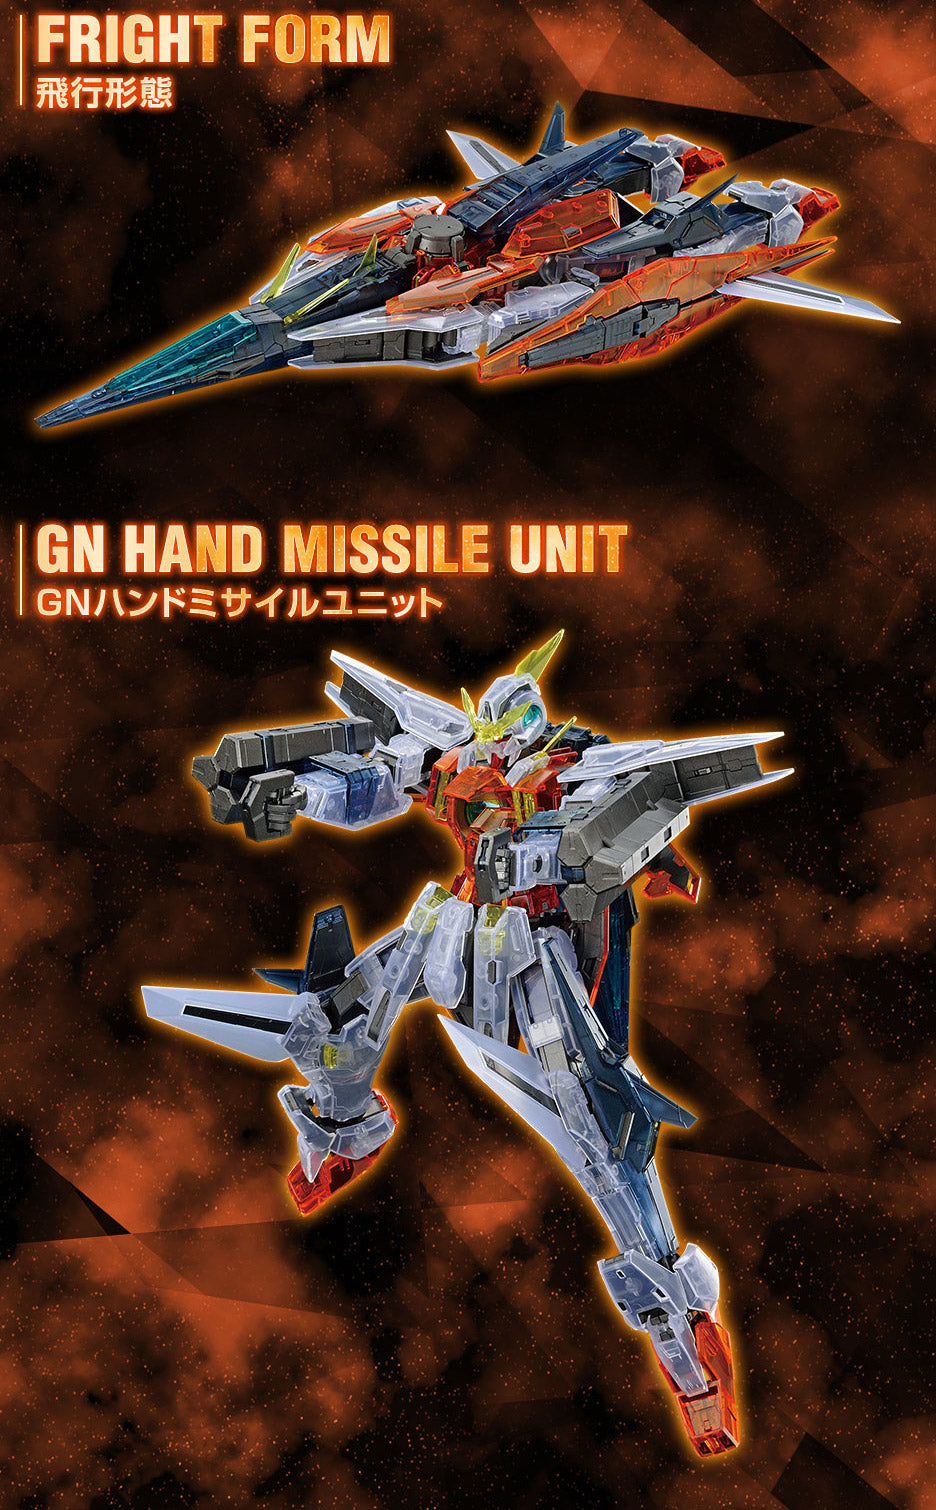 MG 1/100 Gundam Base Limited Gundam Kyrios [Clear Color]